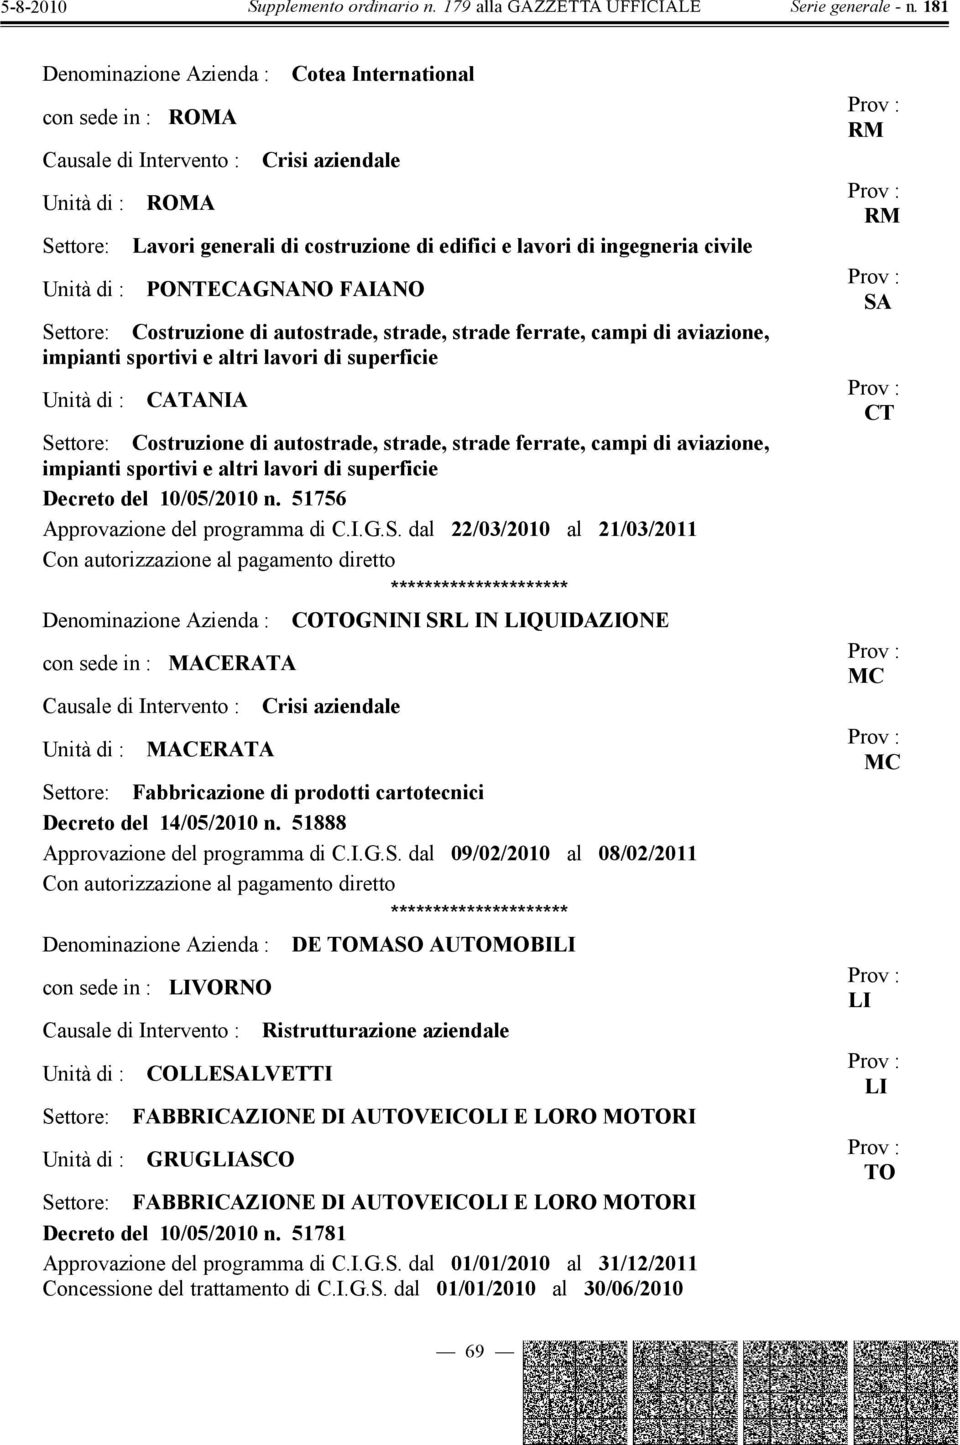 campi di aviazione, impianti sportivi e altri lavori di superficie Decreto del 10/05/2010 n. 51756 Approvazione del programma di C.I.G.S.